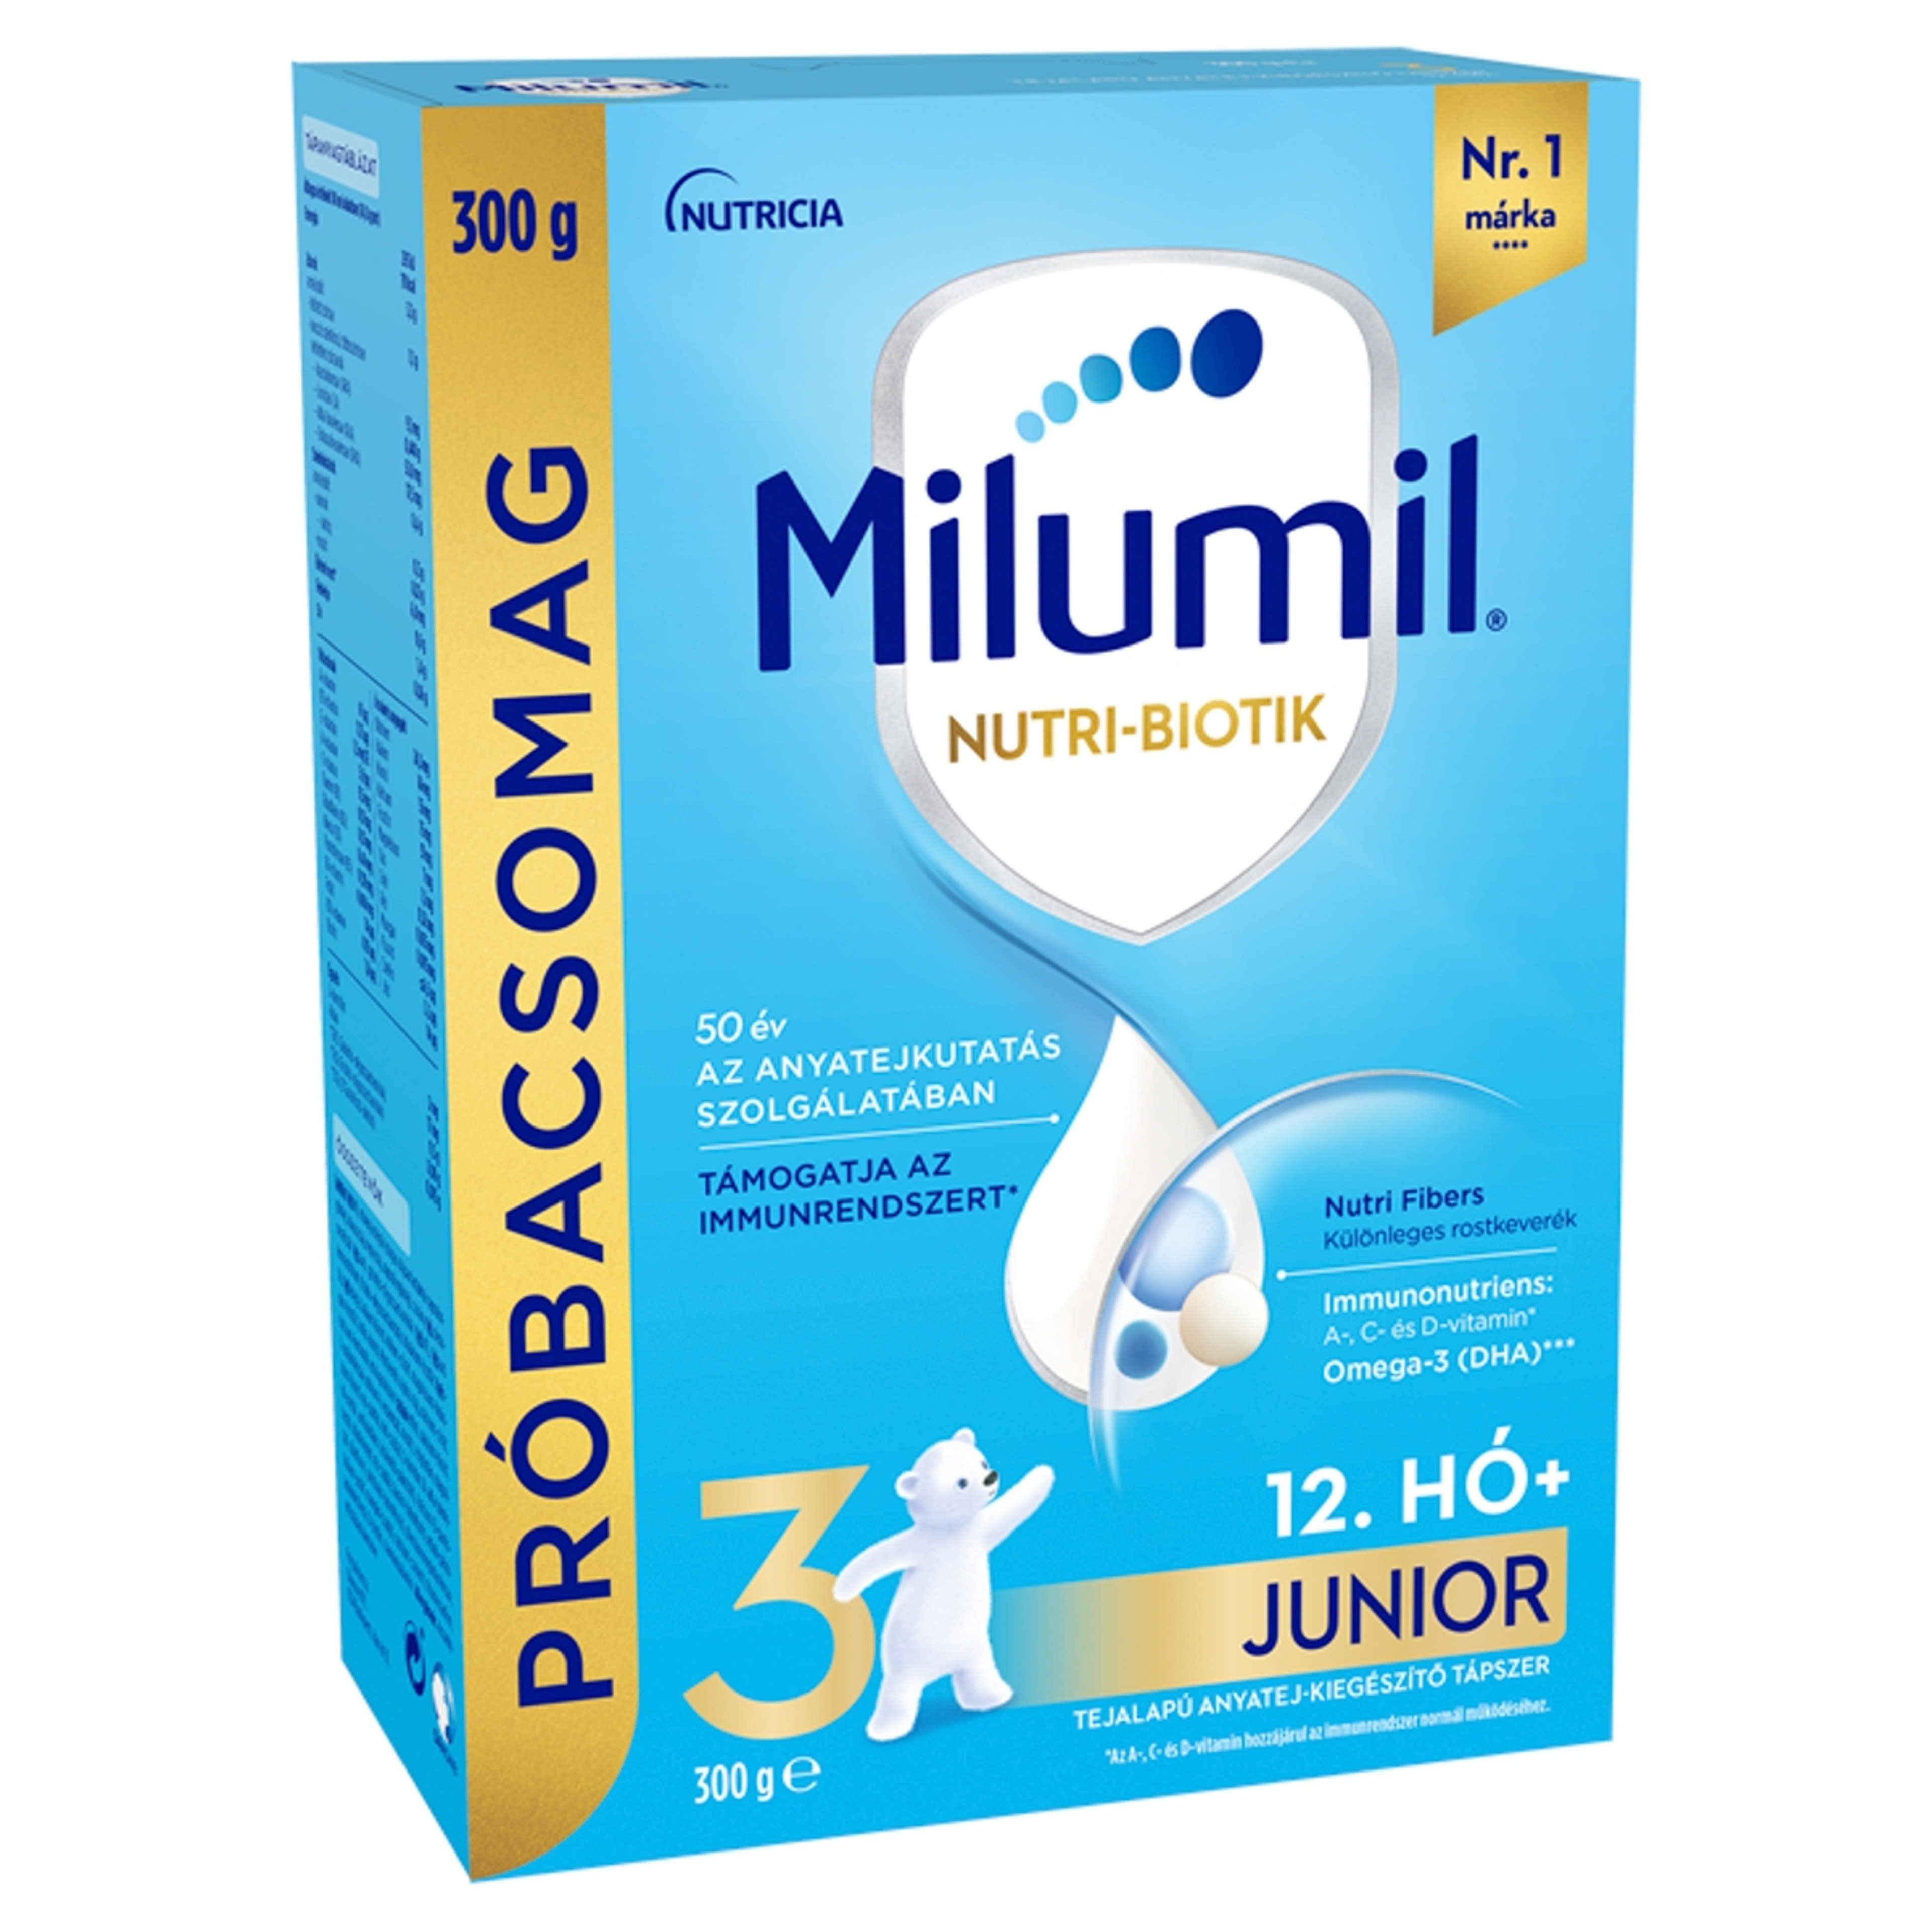 Milumil Nutri-Biotik 3 Junior tejalapú anyatej-kiegészítő tápszer 12.hónapos kortól - 300 g